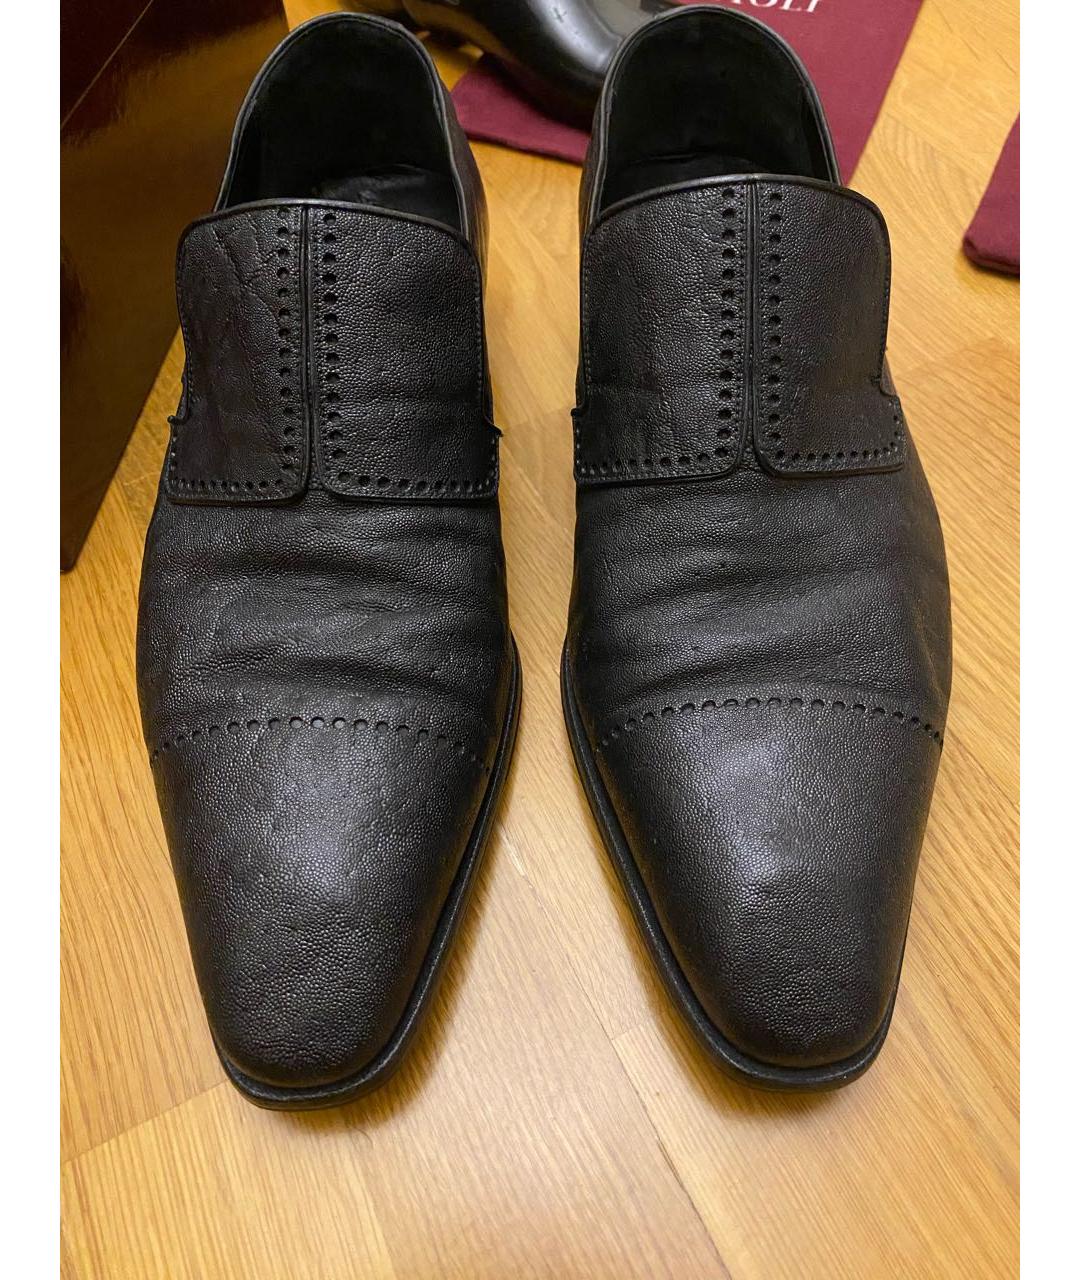 ARTIOLI Черные туфли из экзотической кожи, фото 2